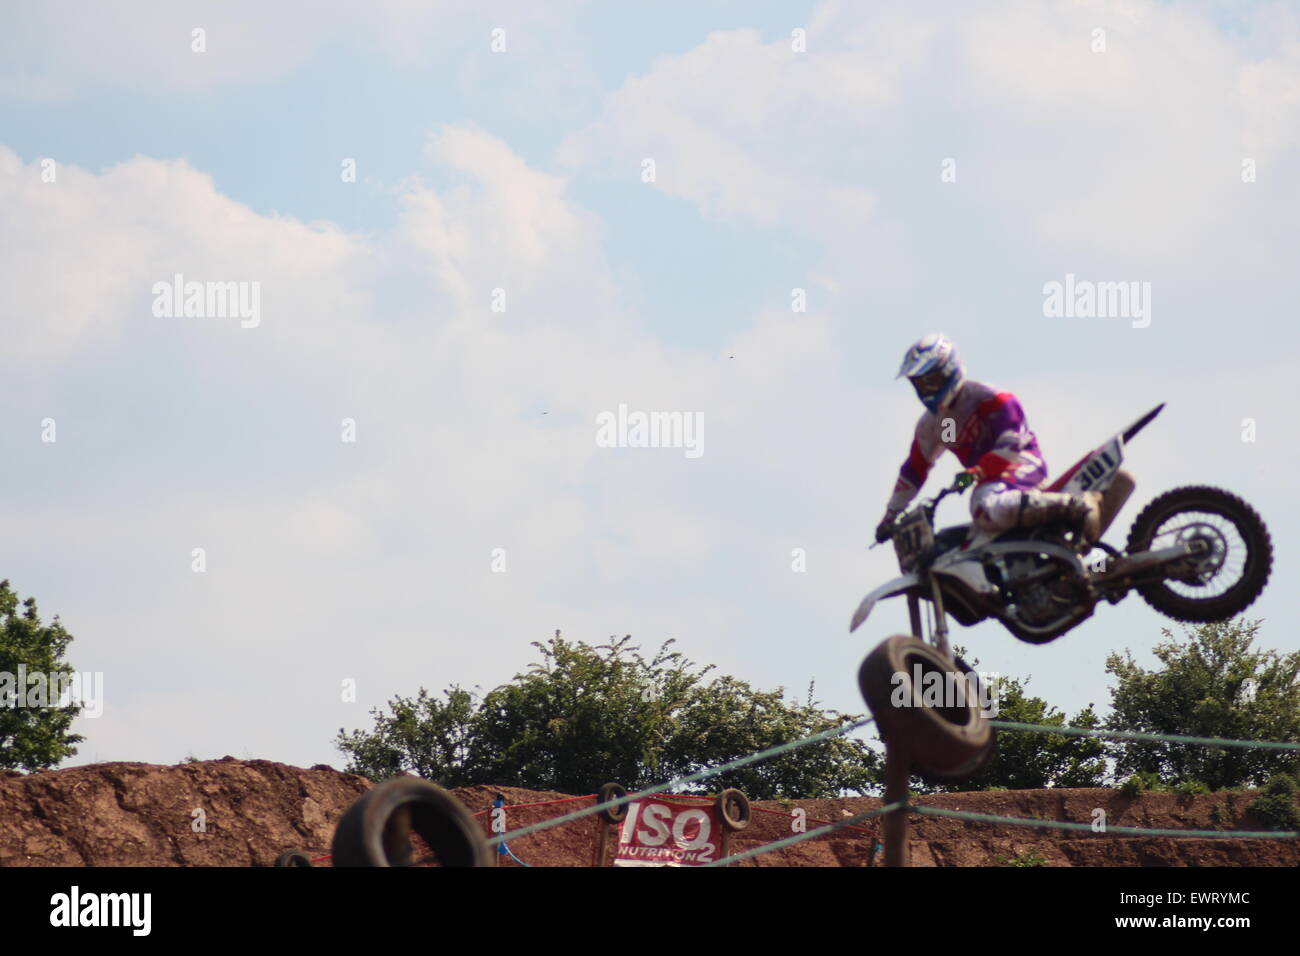 Action-Adventure Motocross-Motorrad-Renn-Training-Event. Rennen über Feldwege und springen in der Luft, Schmutz Sprays / Stockfoto